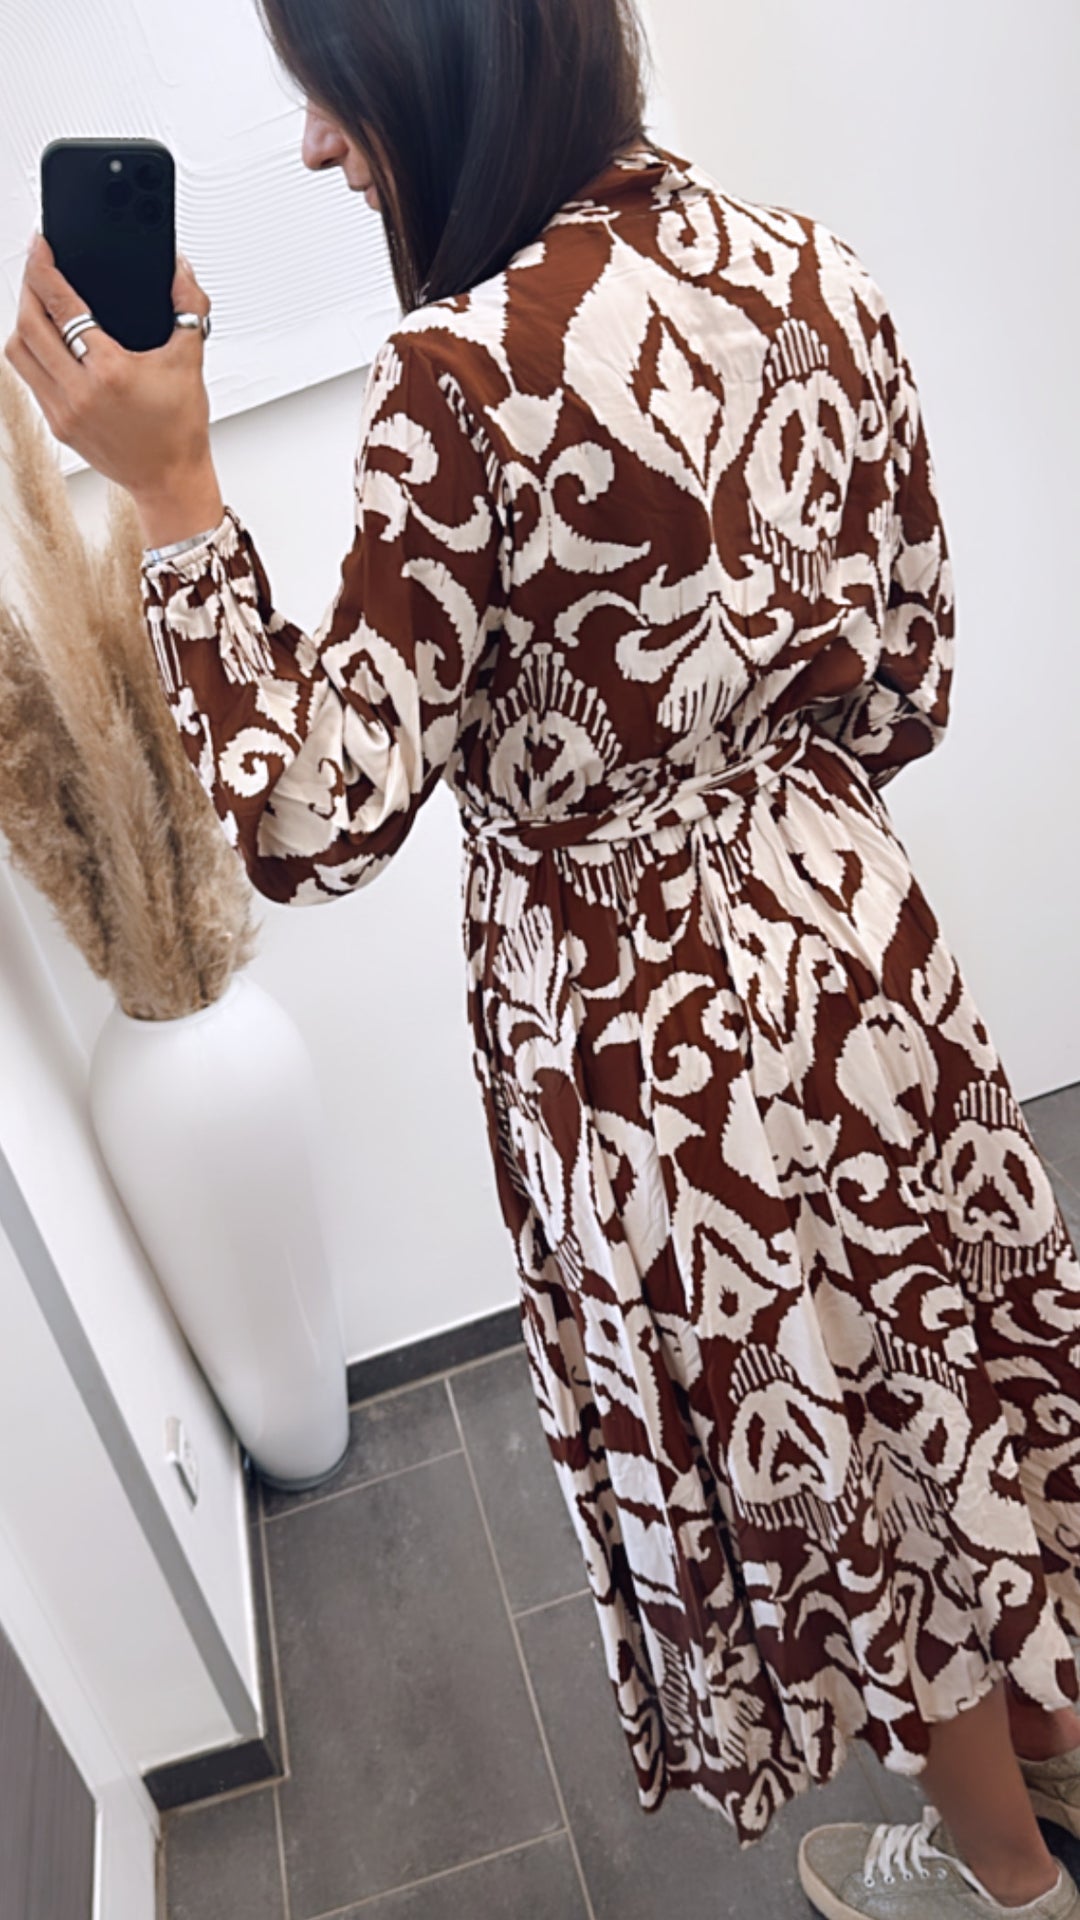 längeres Kleid / braun - creme weiss Art. 5967